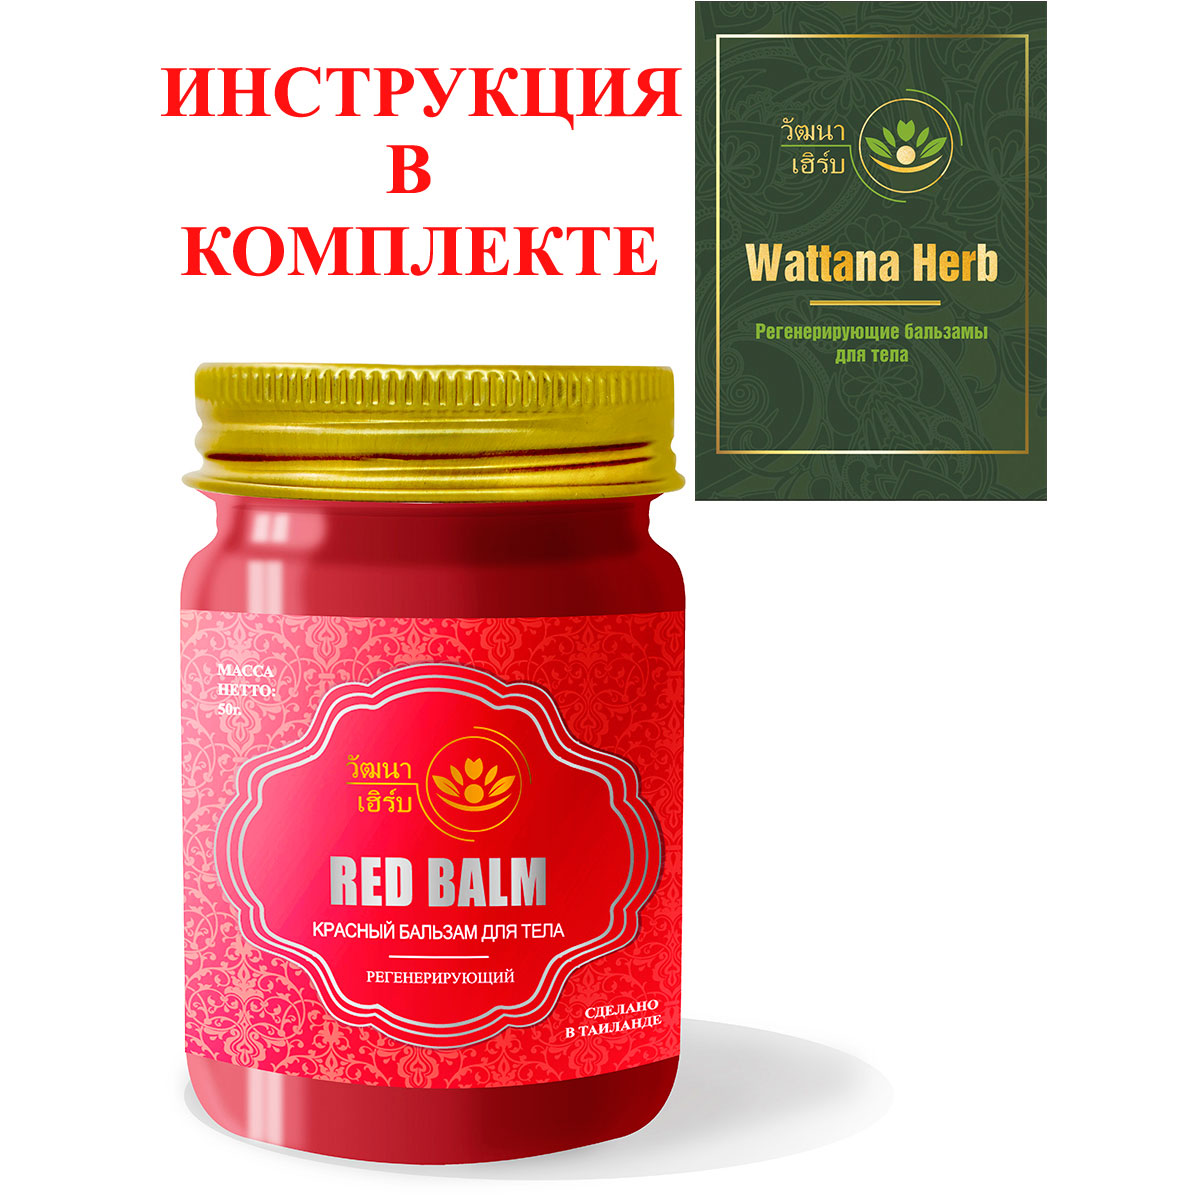 Тайский натуральный Красный бальзам для тела регенерирующий Wattana Herb Red Balm 50гр.